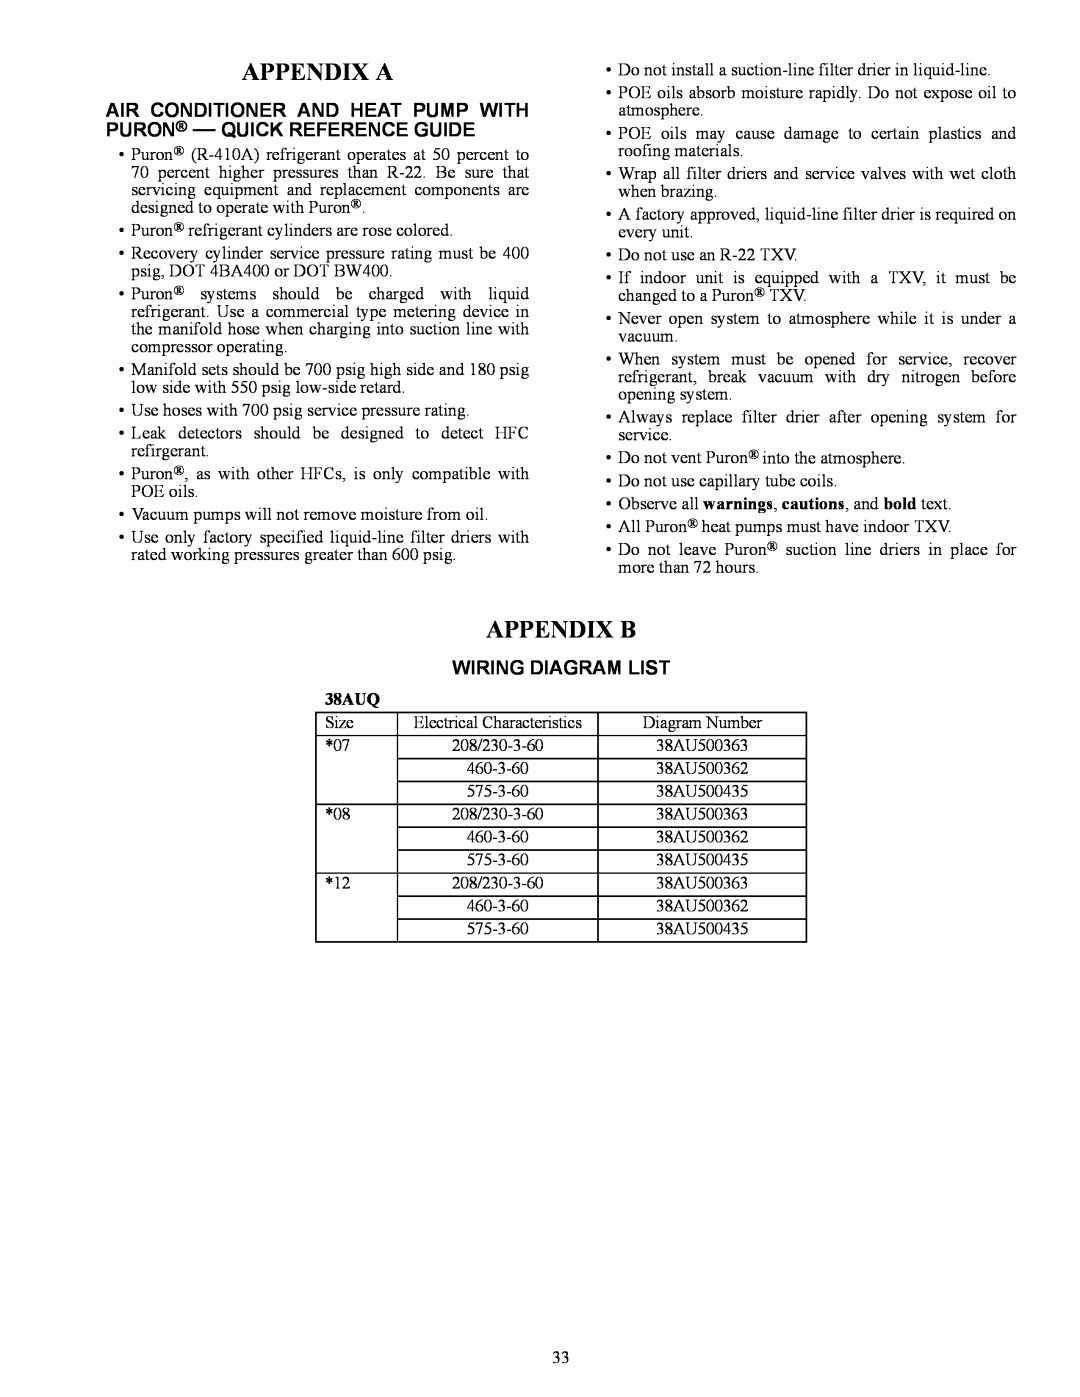 Carrier 38AUQ appendix Appendix A, Appendix B, Wiring Diagram List 